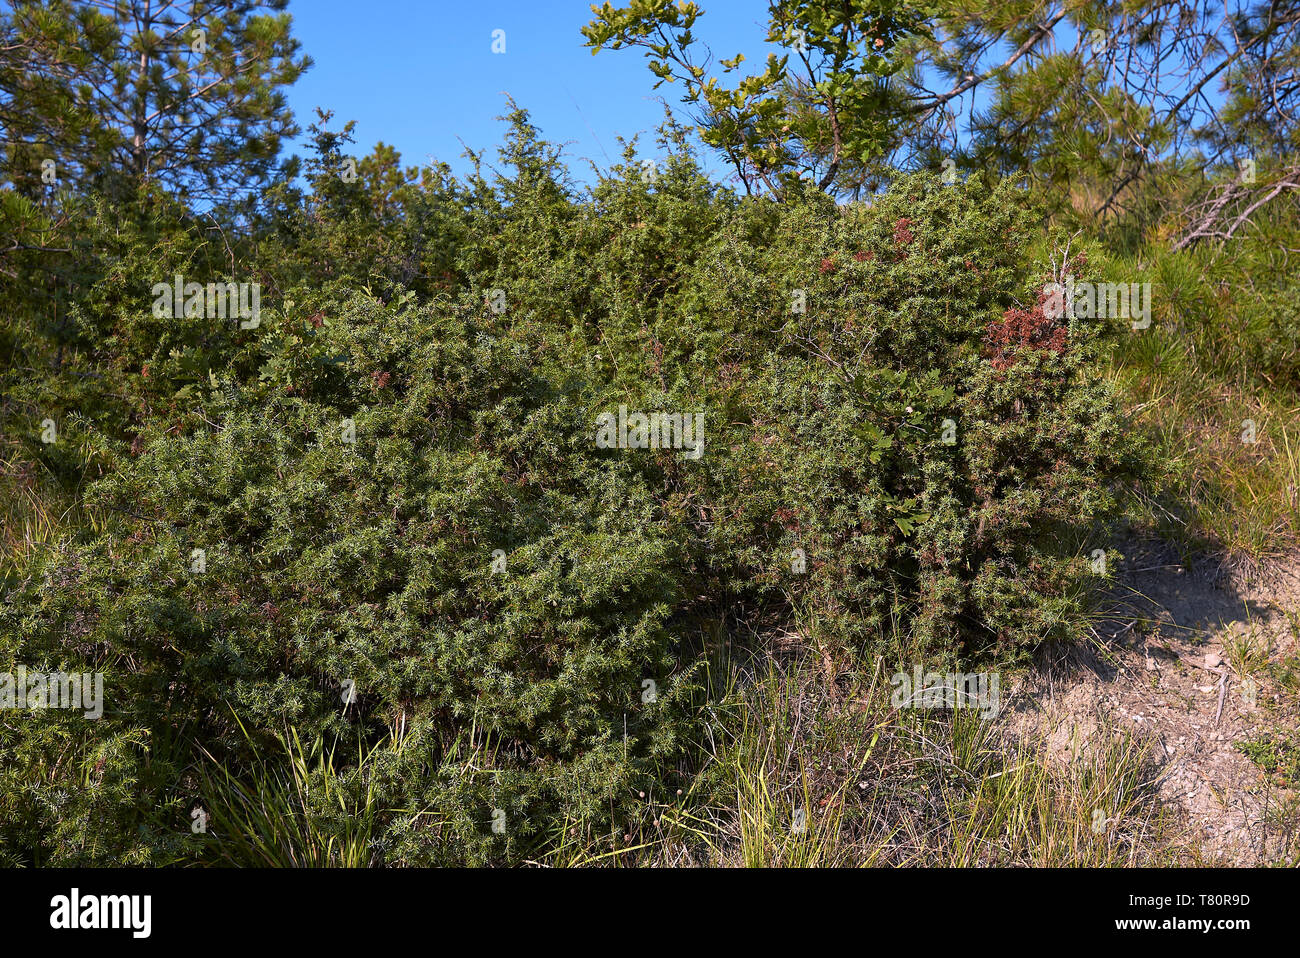 Juniperus communis shrubs in Italy Stock Photo